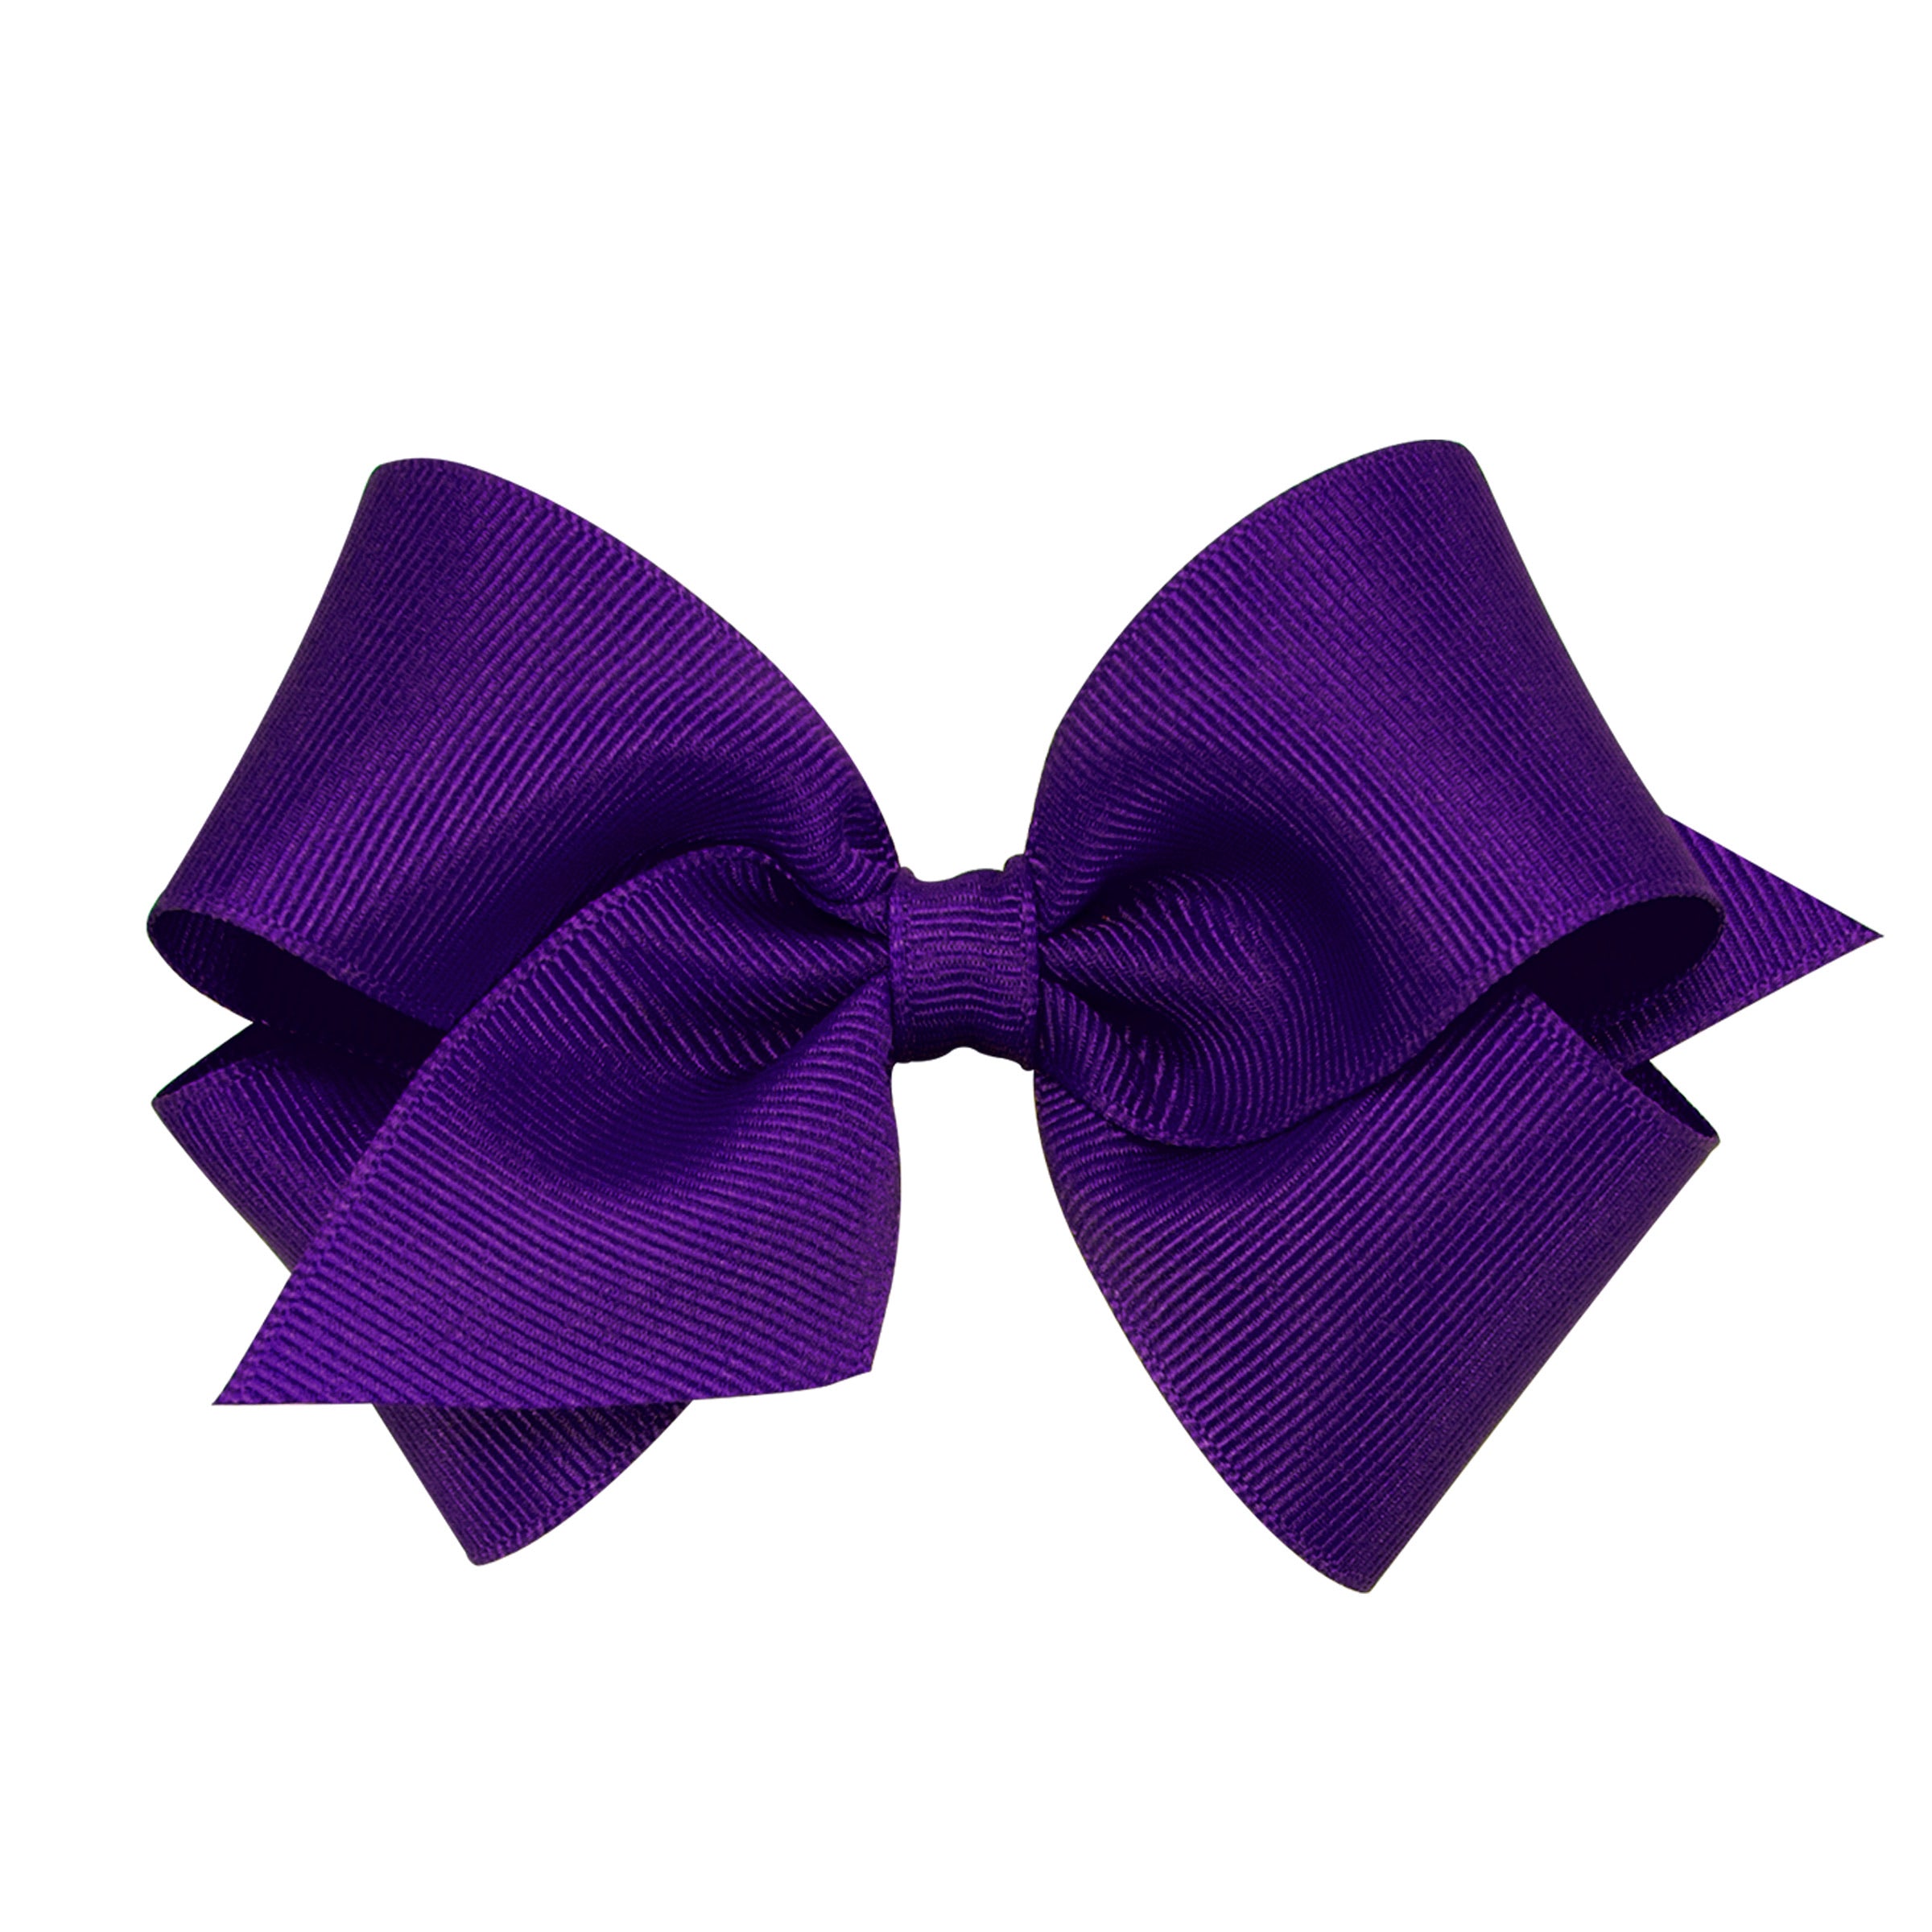 Purple Grosgrain Bow